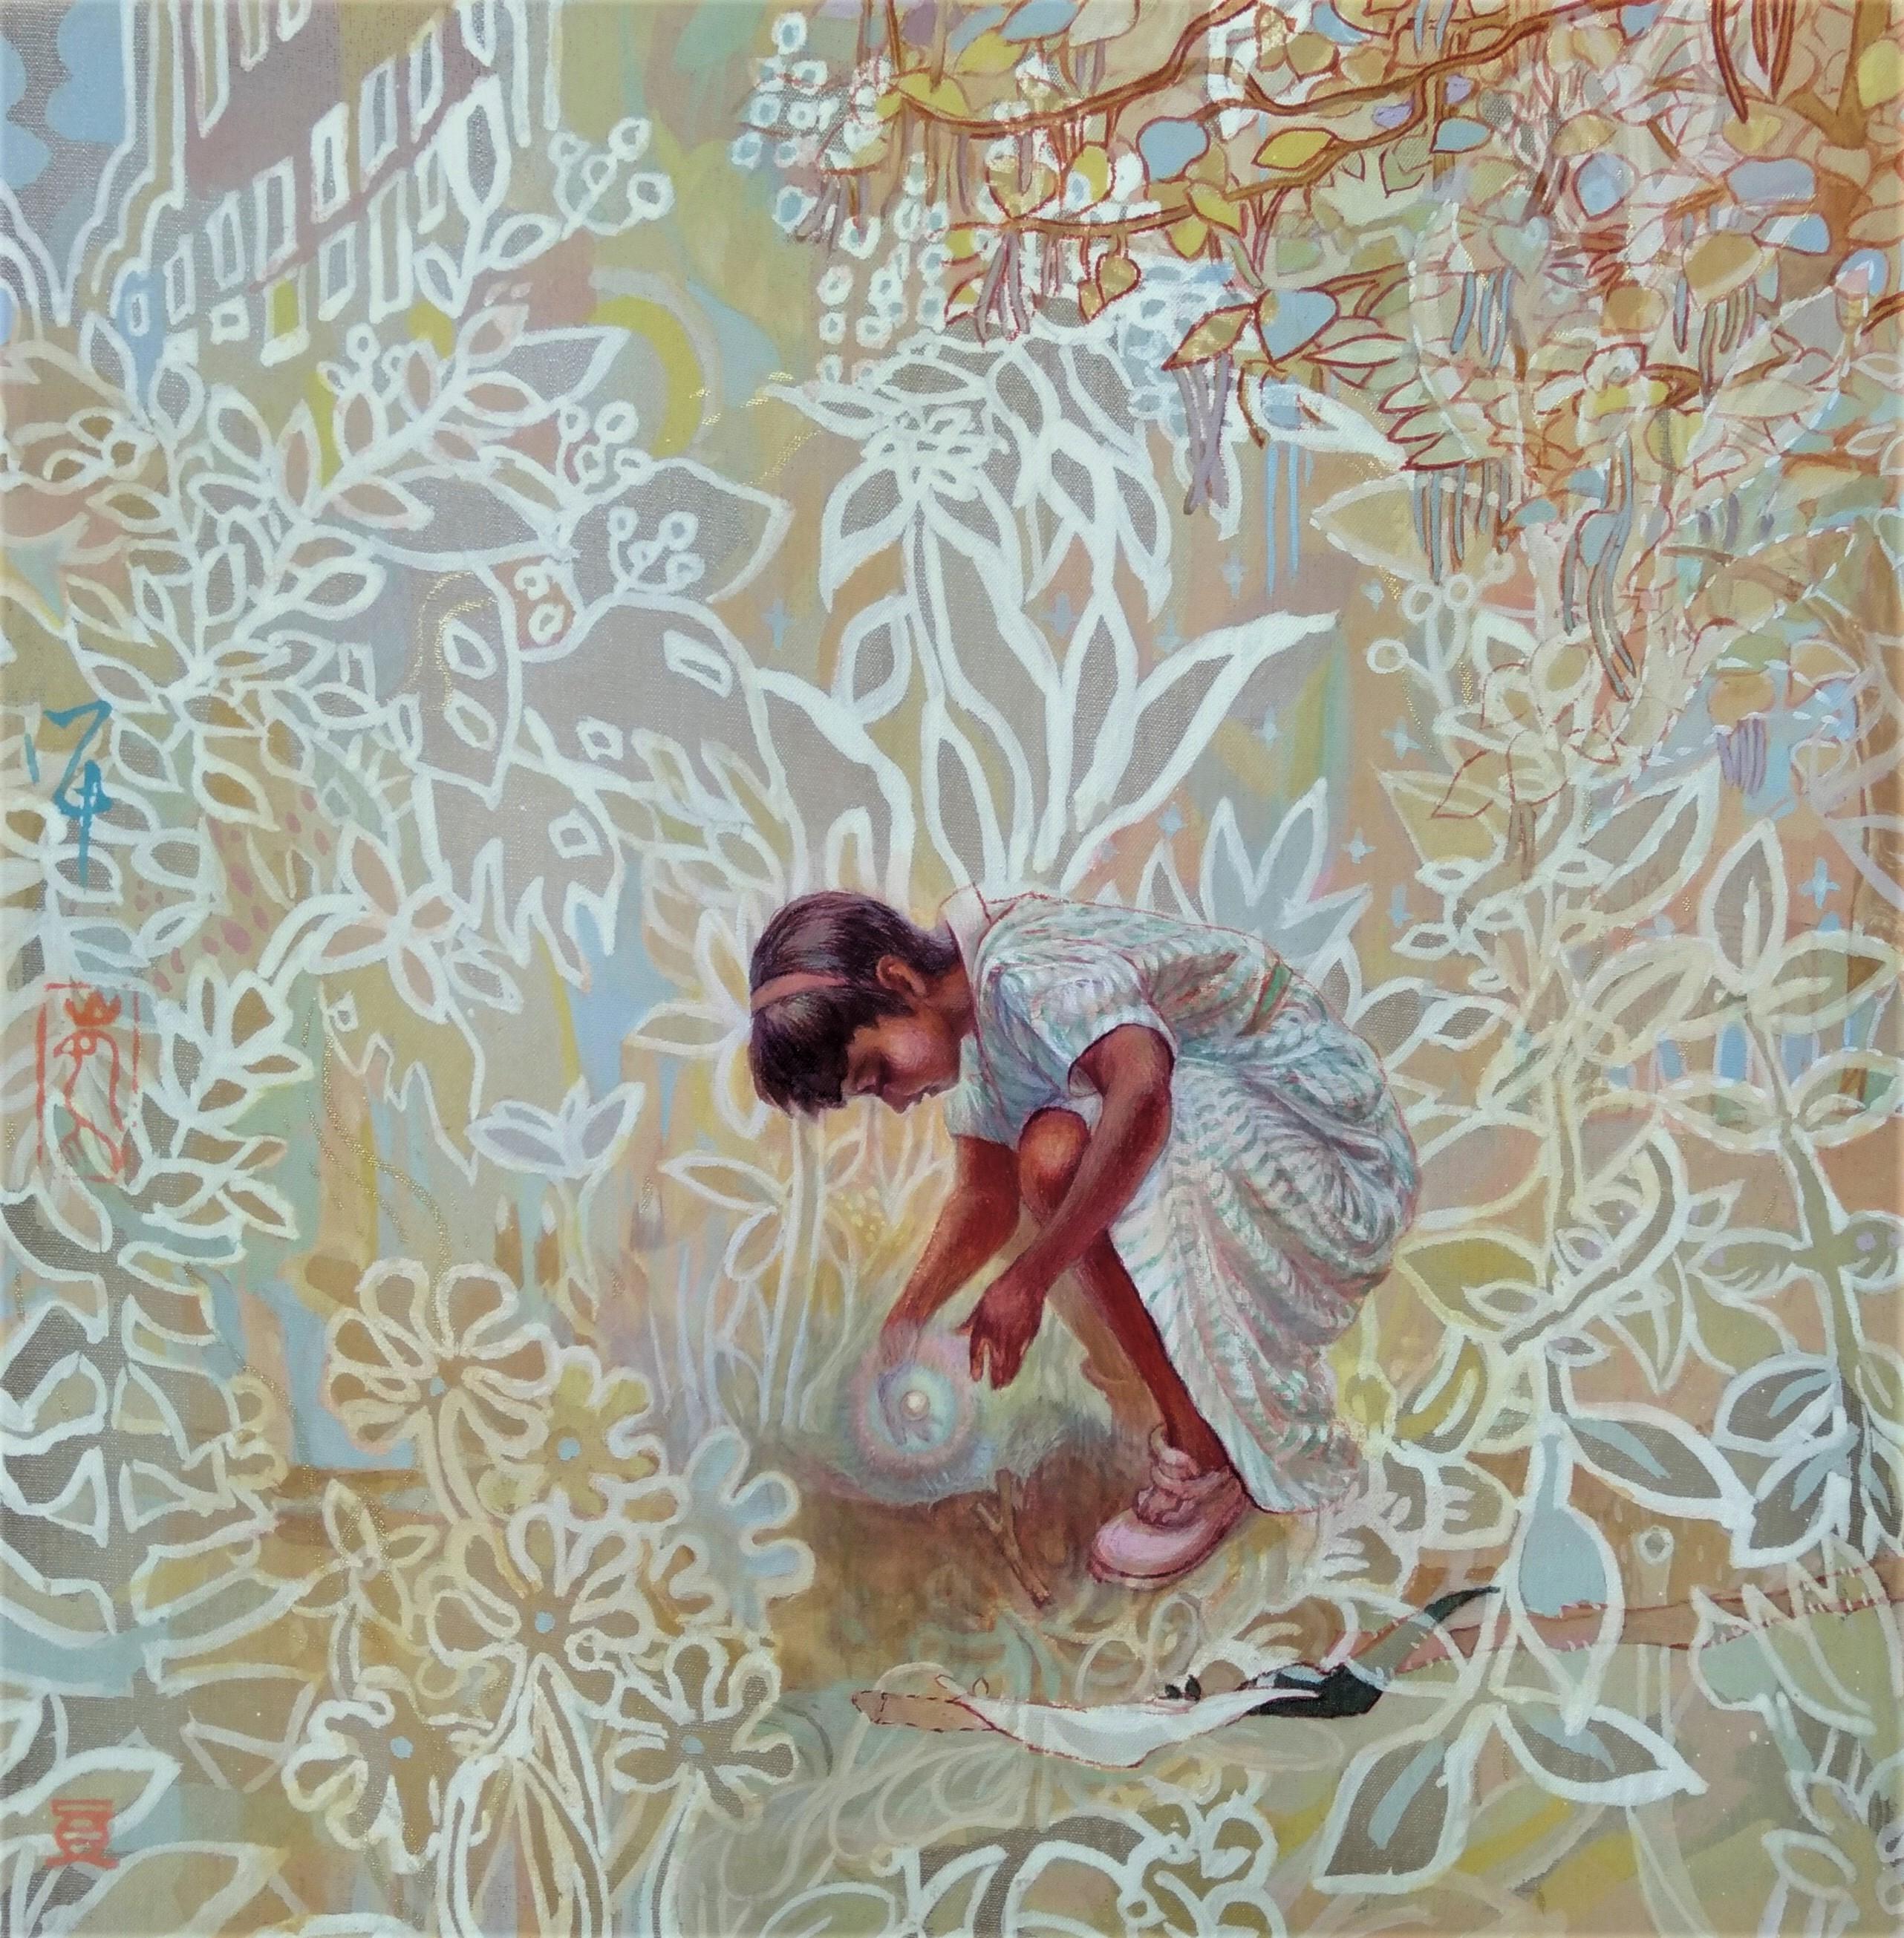 Landscape Painting Maki Kuchida - « The Seed », peinture figurative japonaise aux pigments sur soie, découverte d'une vraie fille